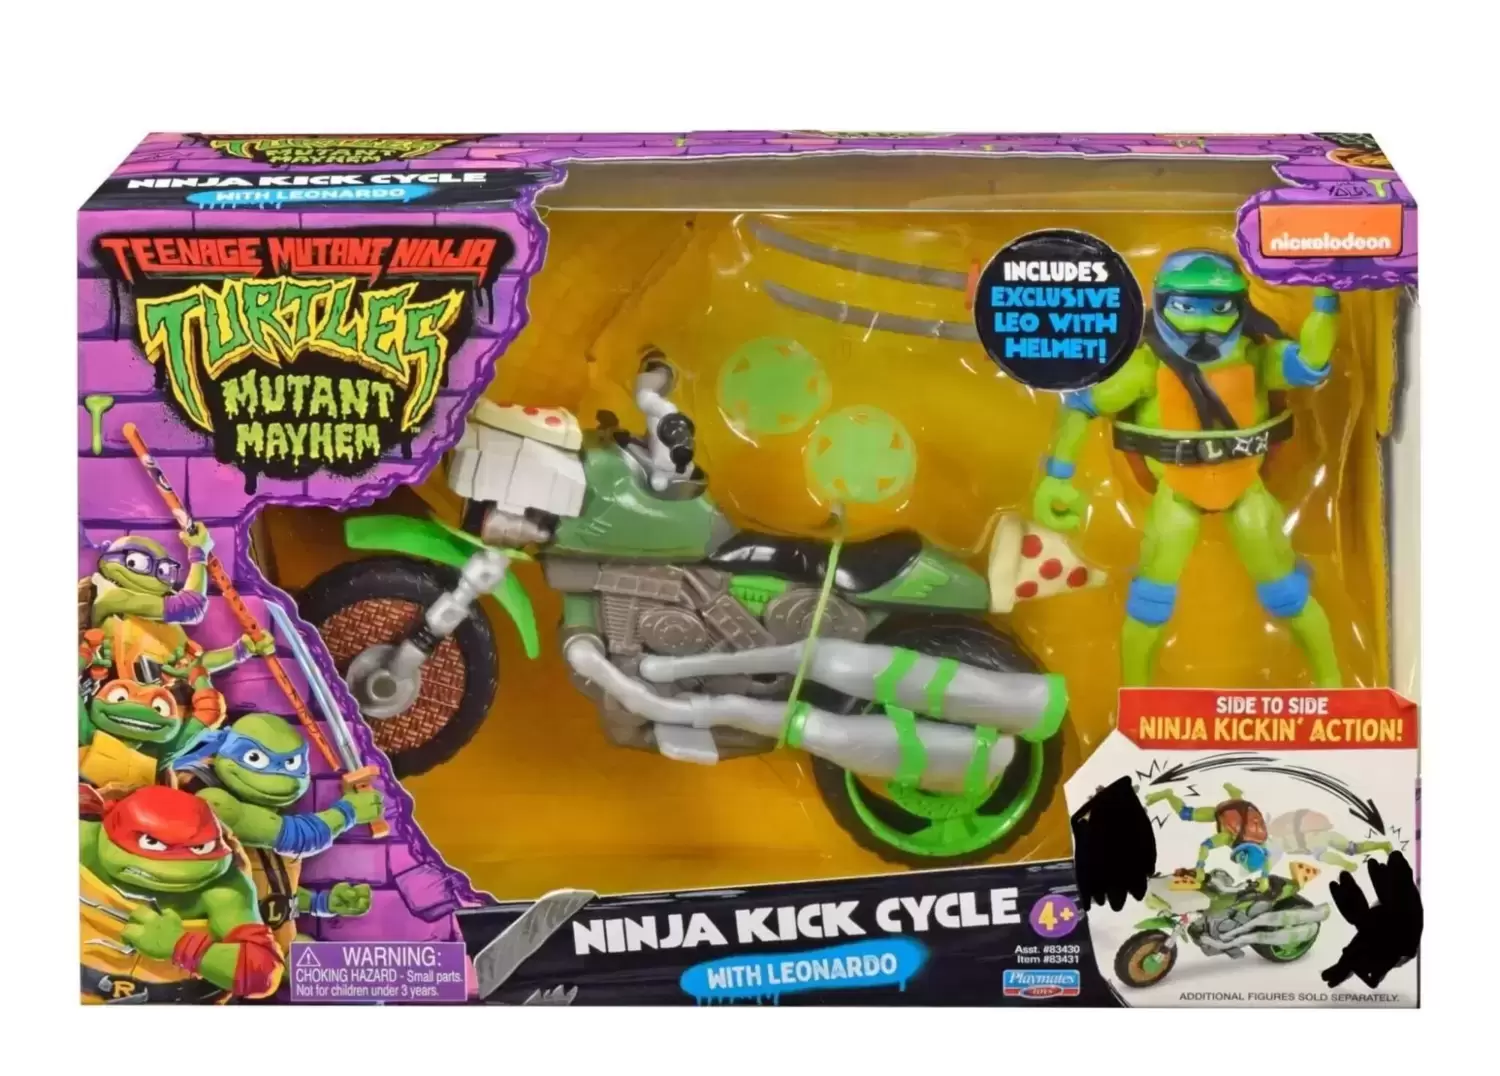 Teenage Mutant Ninja Turtles Mutant Mayhem - Ninja Kick Cycle With Leonardo